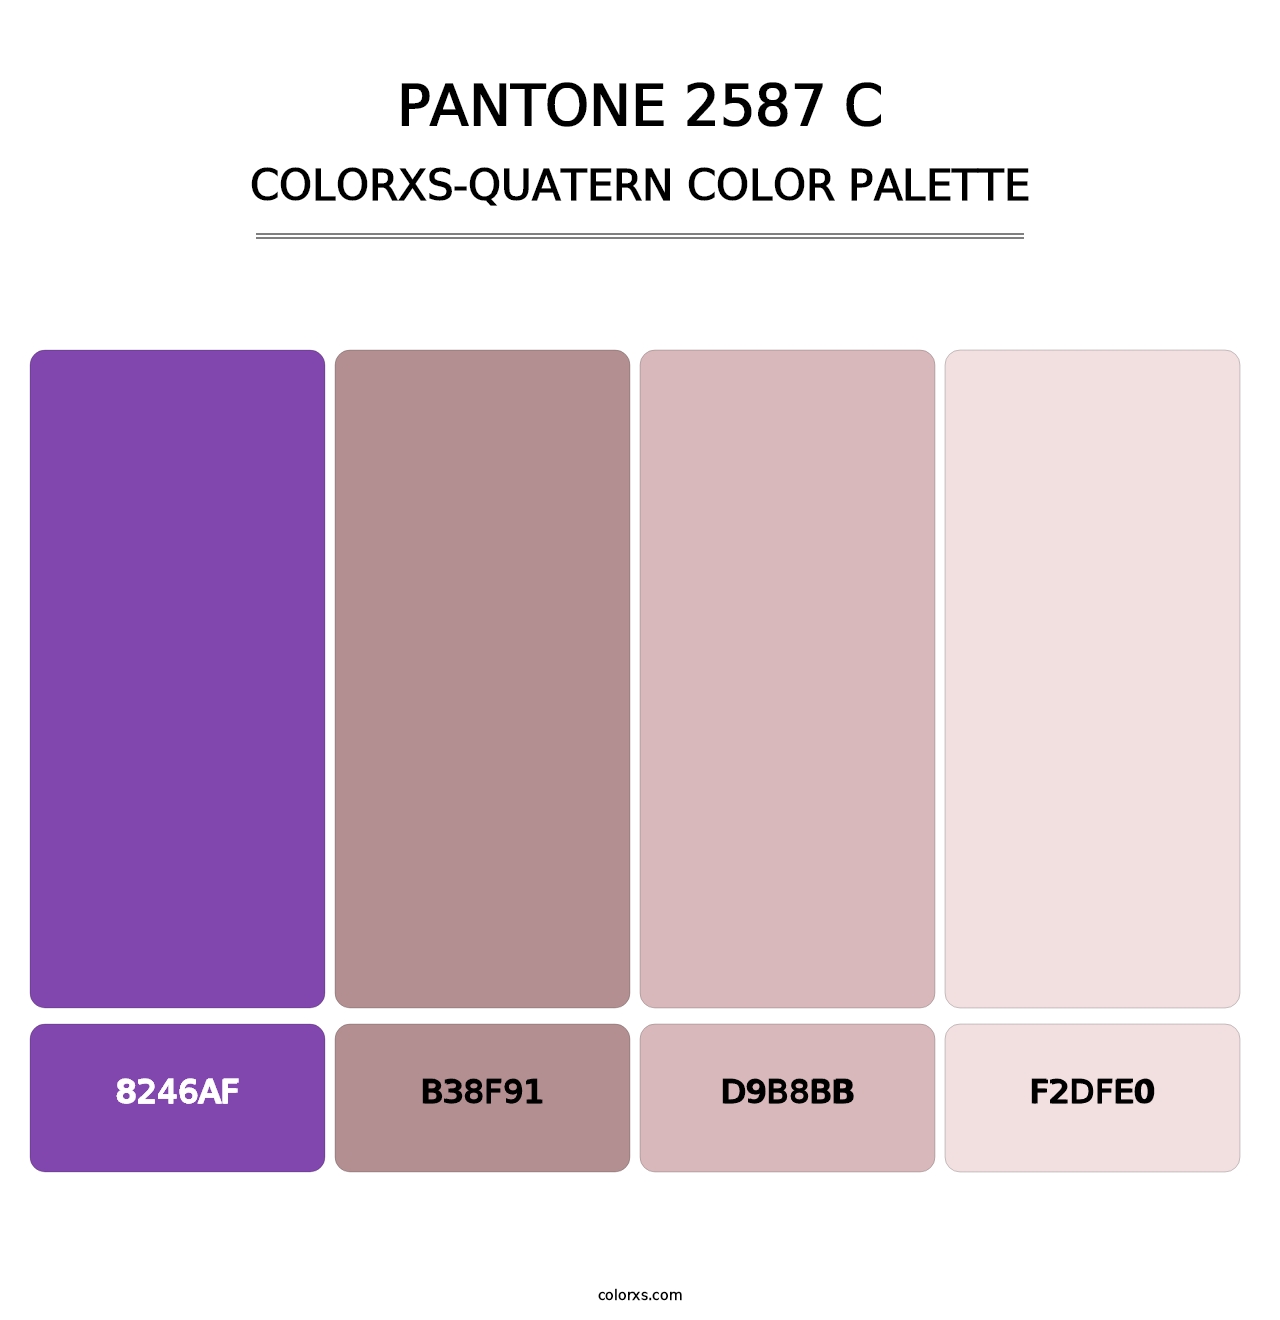 PANTONE 2587 C - Colorxs Quatern Palette